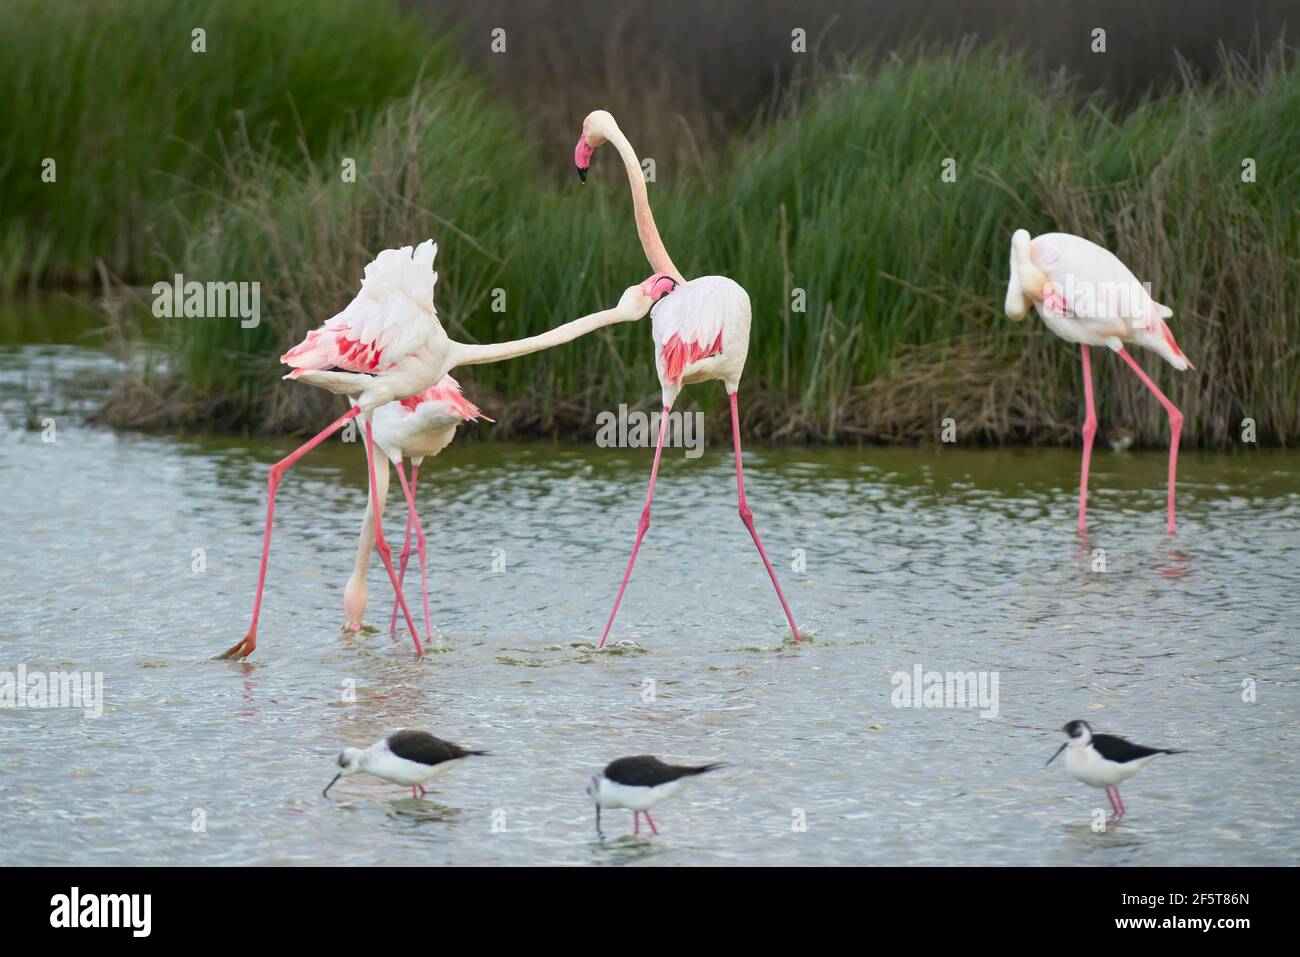 Lotta di fenicotteri comuni o fenicotteri rosa (Flamingo) nella riserva naturale della laguna di Fuente de Piedra a Malaga. Andalusia, Spagna Foto Stock